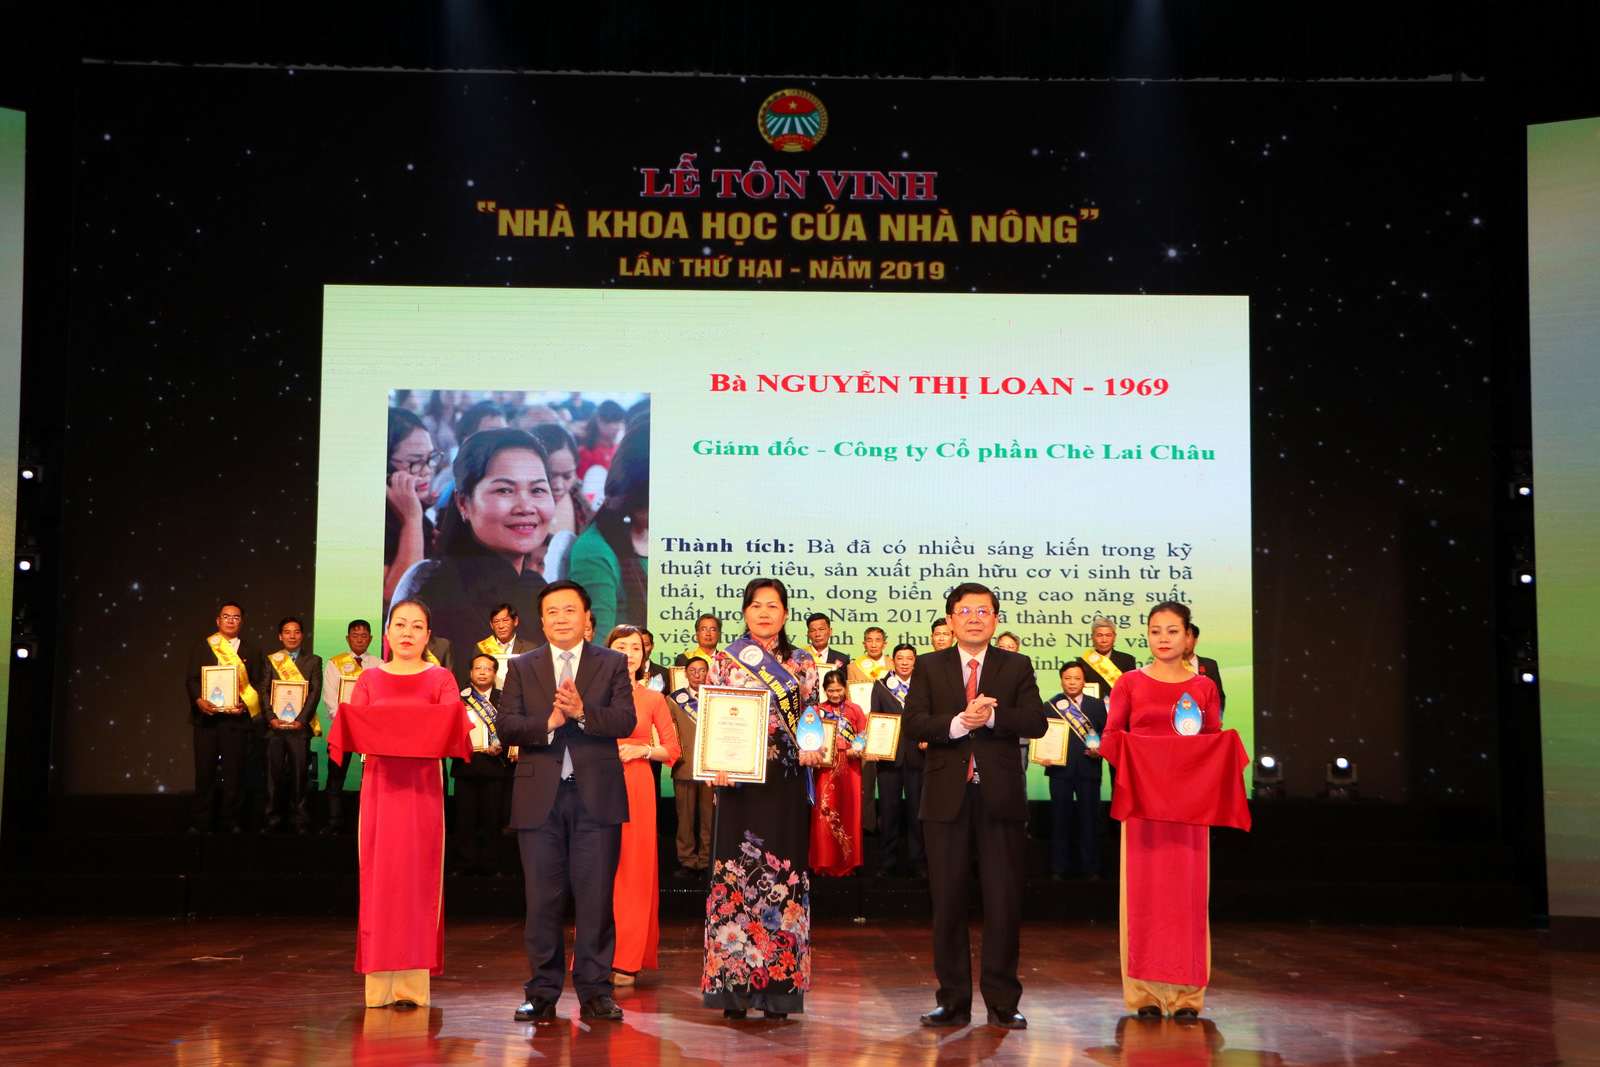 Lãnh đạo Học viện Chính trị Quốc gia Hồ Chí Minh và Trung ương MTTQ Việt Nam trao giấy chứng nhận và kỷ niệm chương cho bà Nguyễn Thị Loan